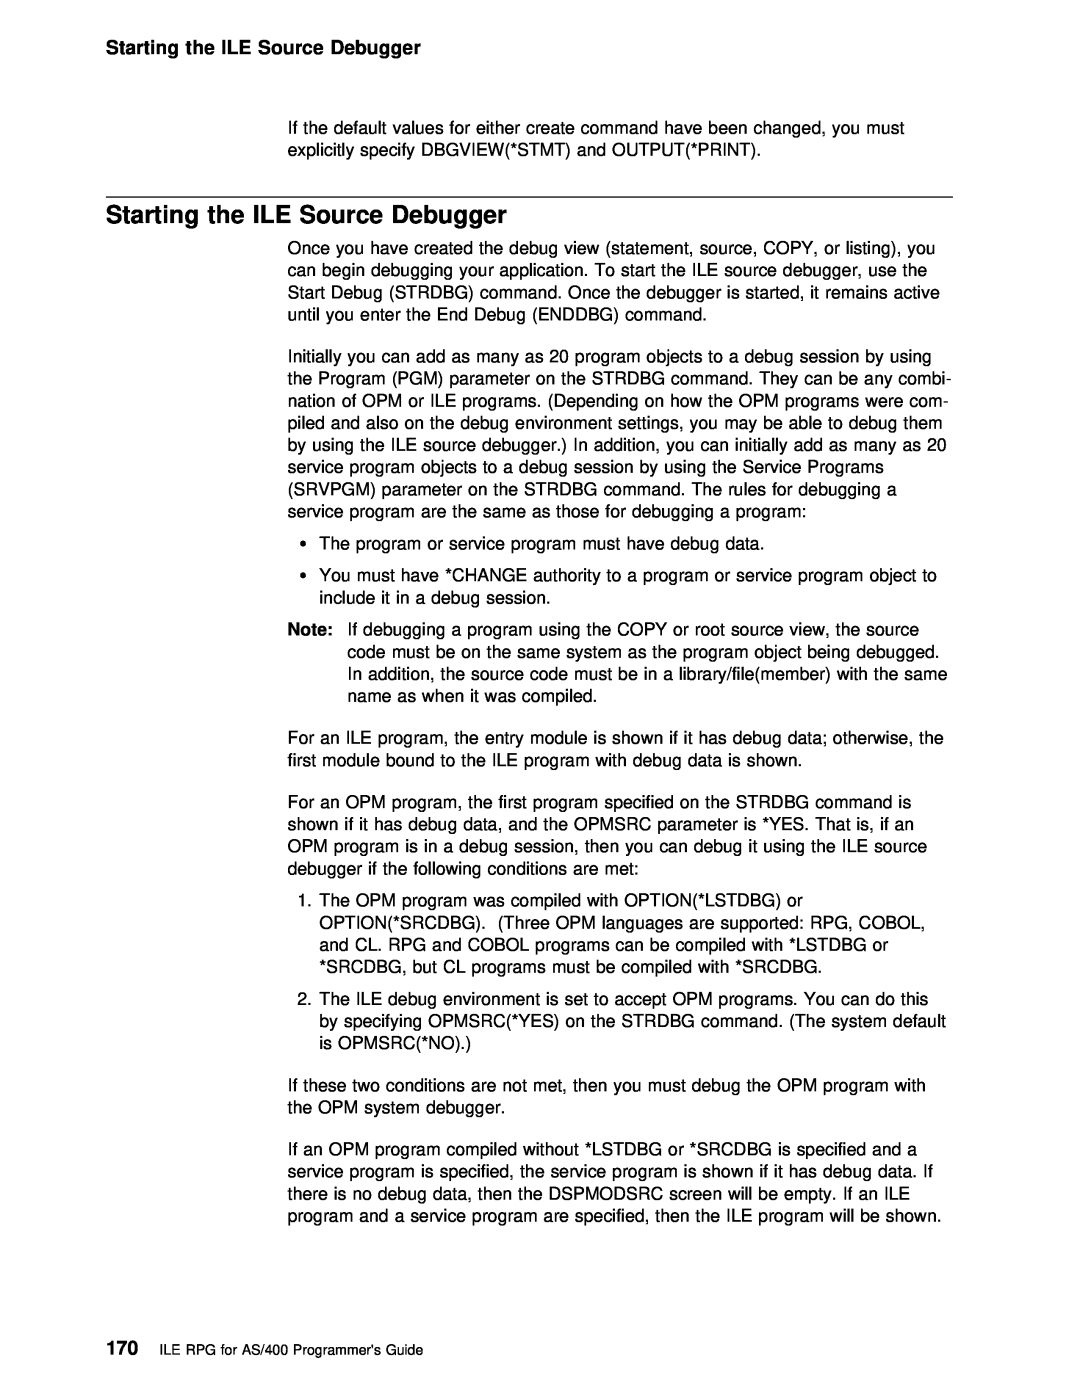 IBM AS/400 manual Starting the ILE Source Debugger 